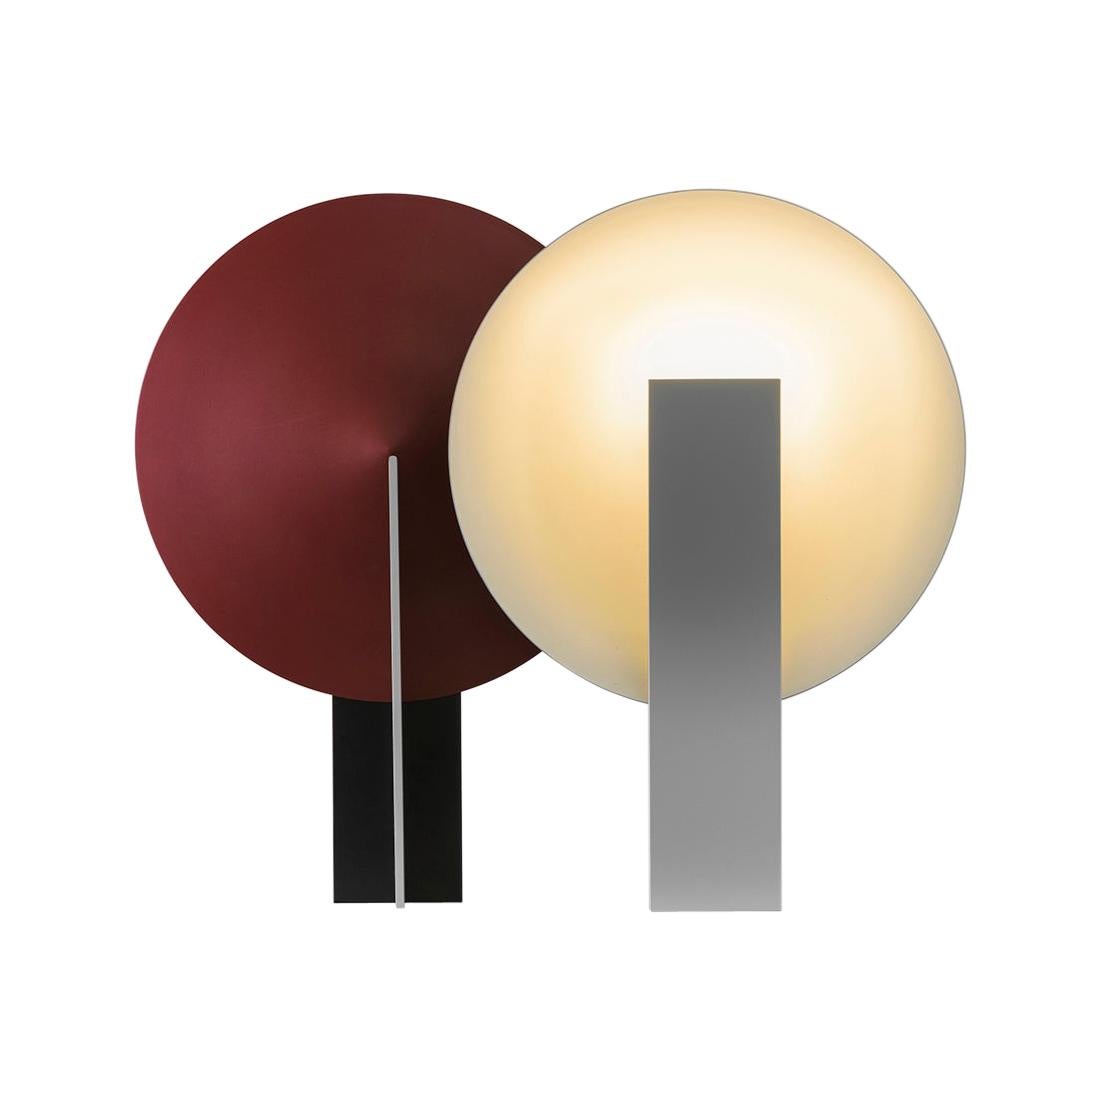 Orbe-Tischlampe, von RAIN, zeitgenössische Lampe, Messing und Aluminium, Schwarz und Rot